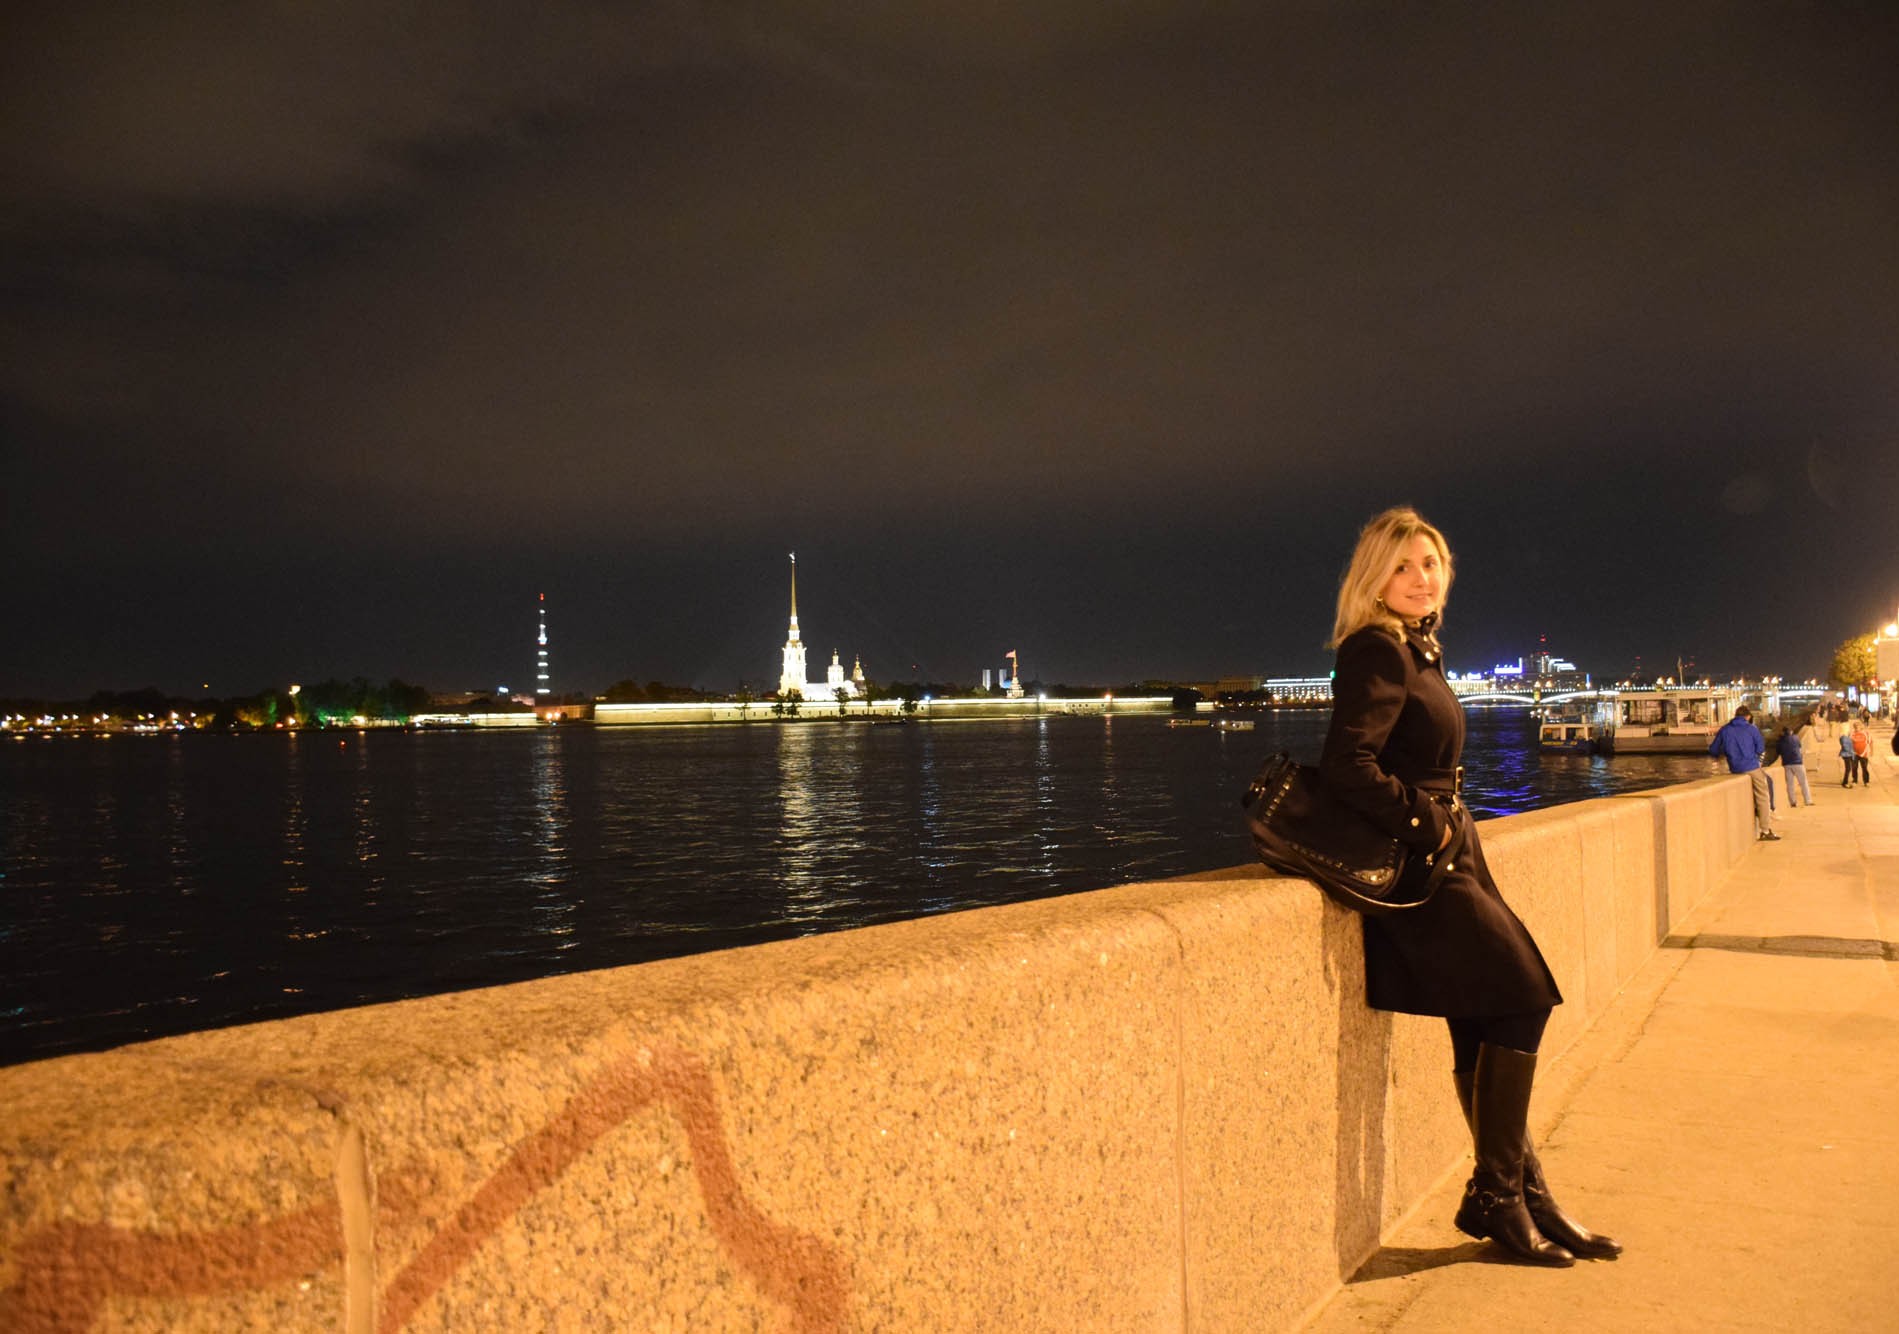 São Petersburgo by night - nas margens do Rio Neva